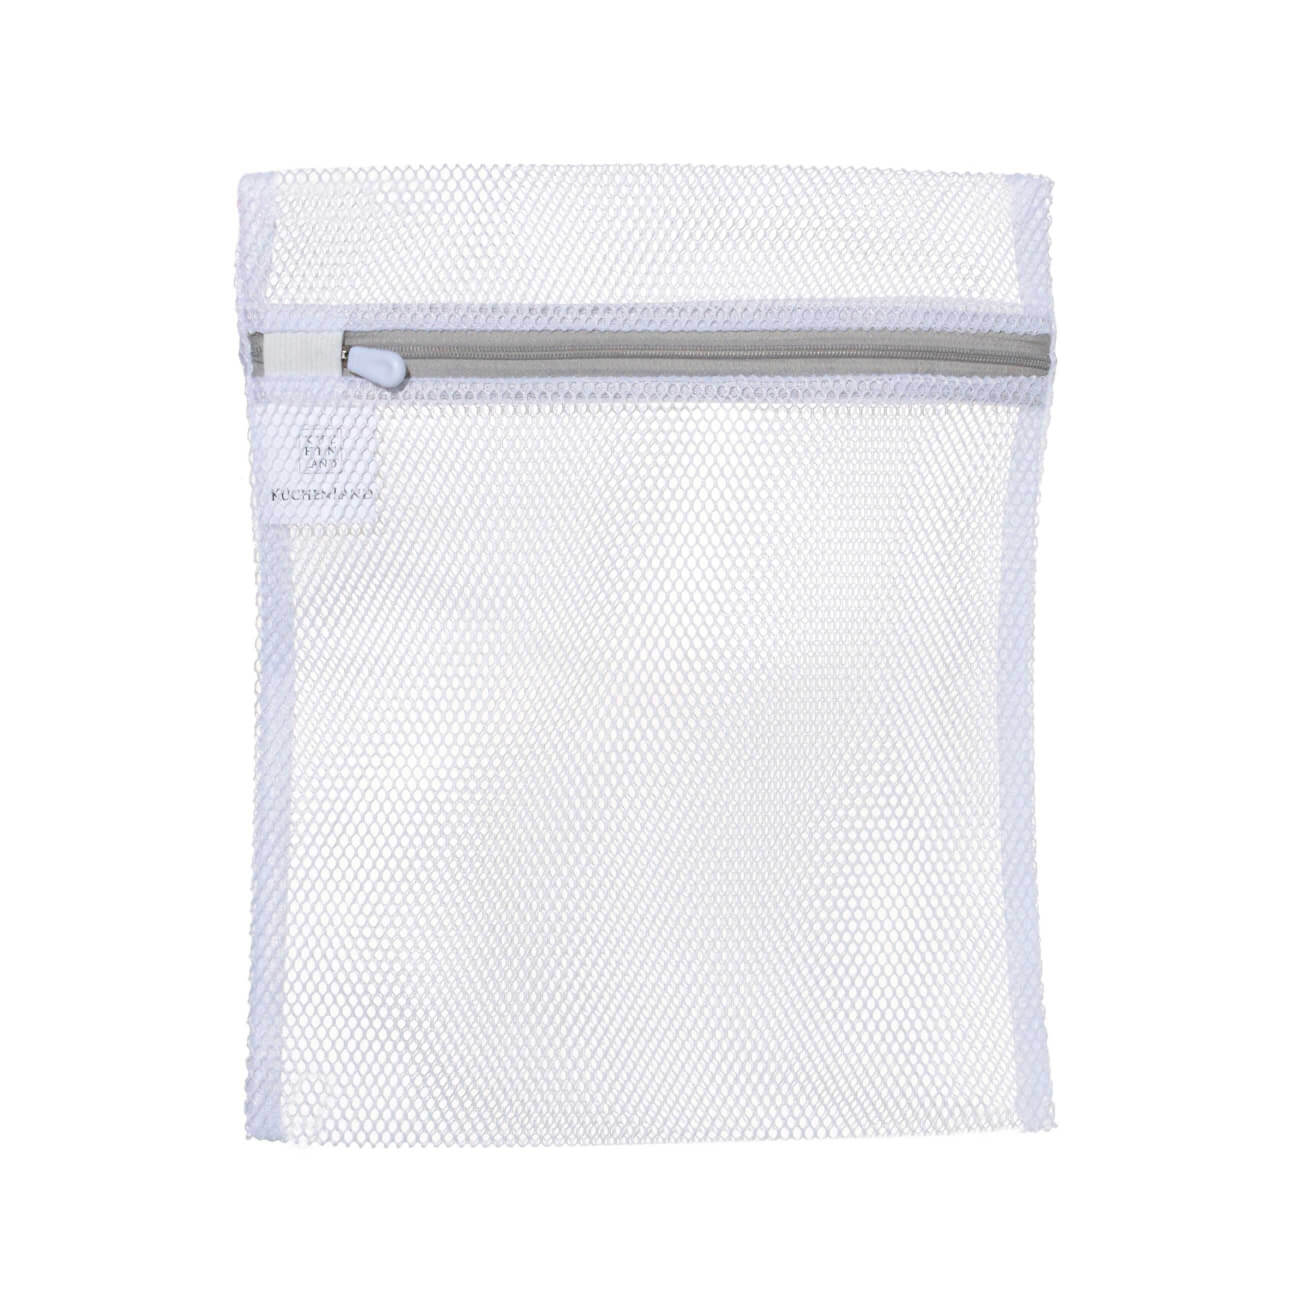 Мешок для стирки нижнего белья, 25х30 см, полиэстер, бело-серый, Safety мешок для стирки одежды 40х50 см полиэстер бело серый safety plus